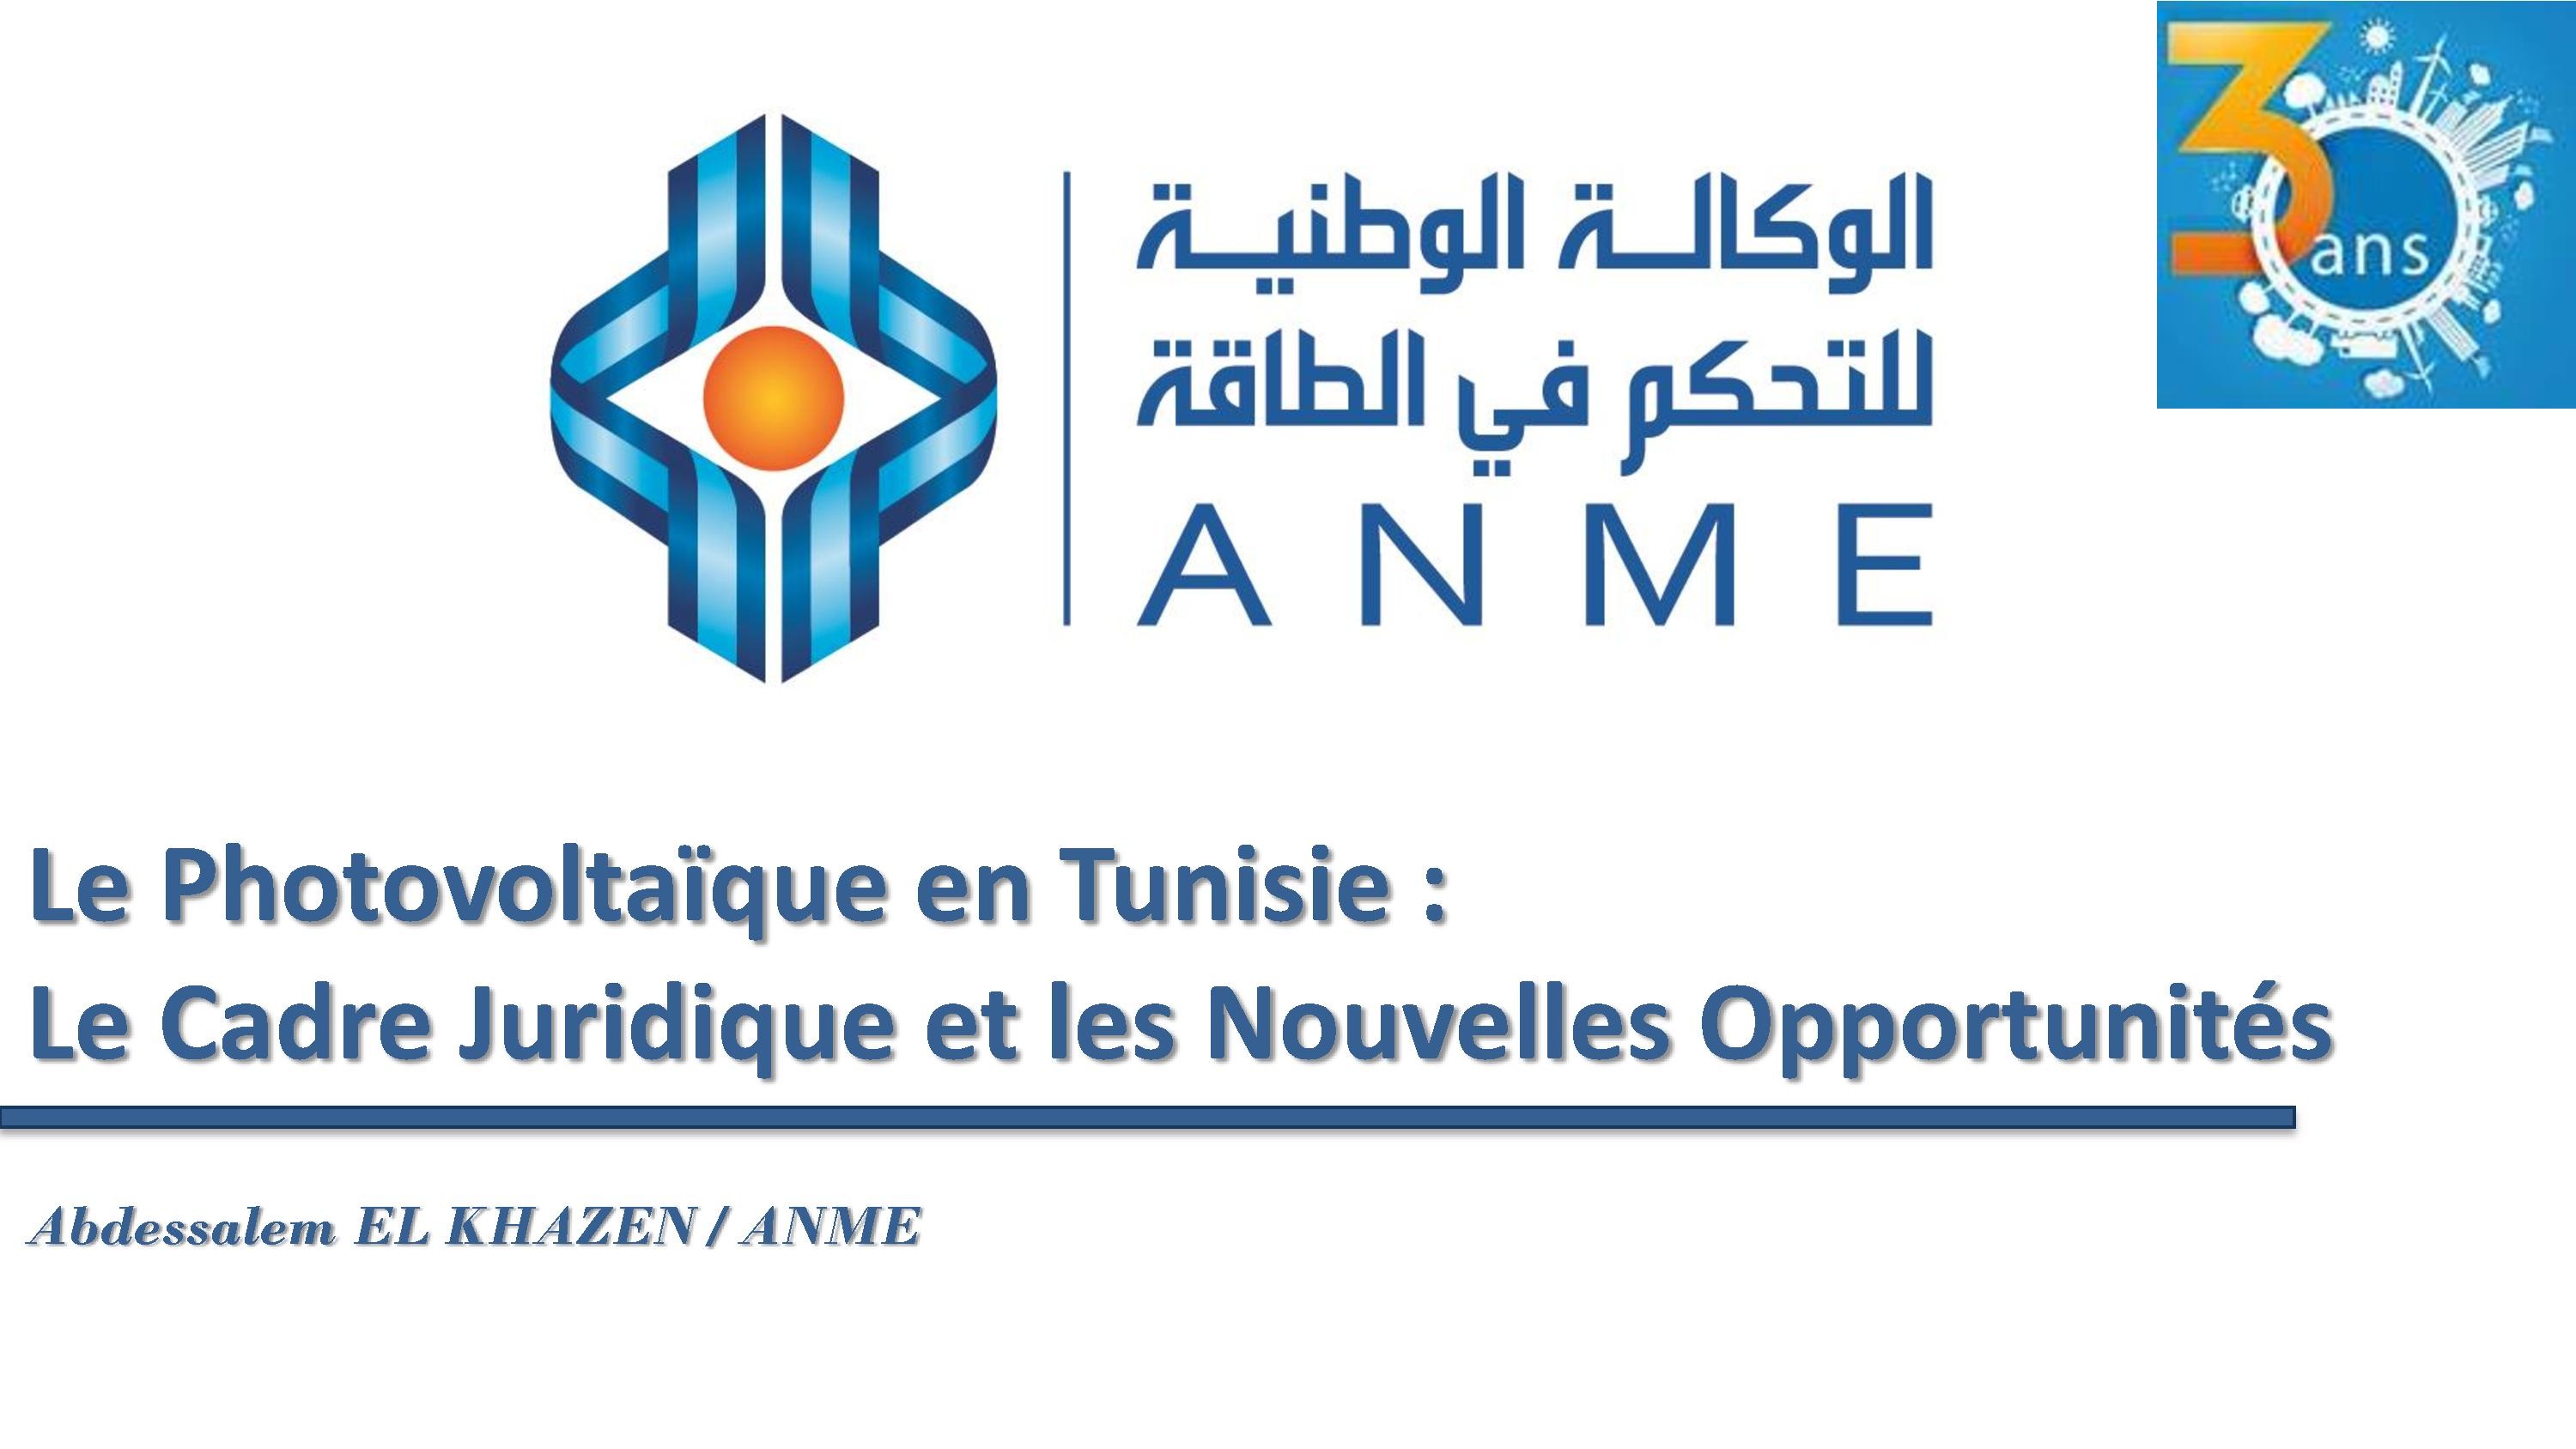 Le photovoltaïque en Tunisie